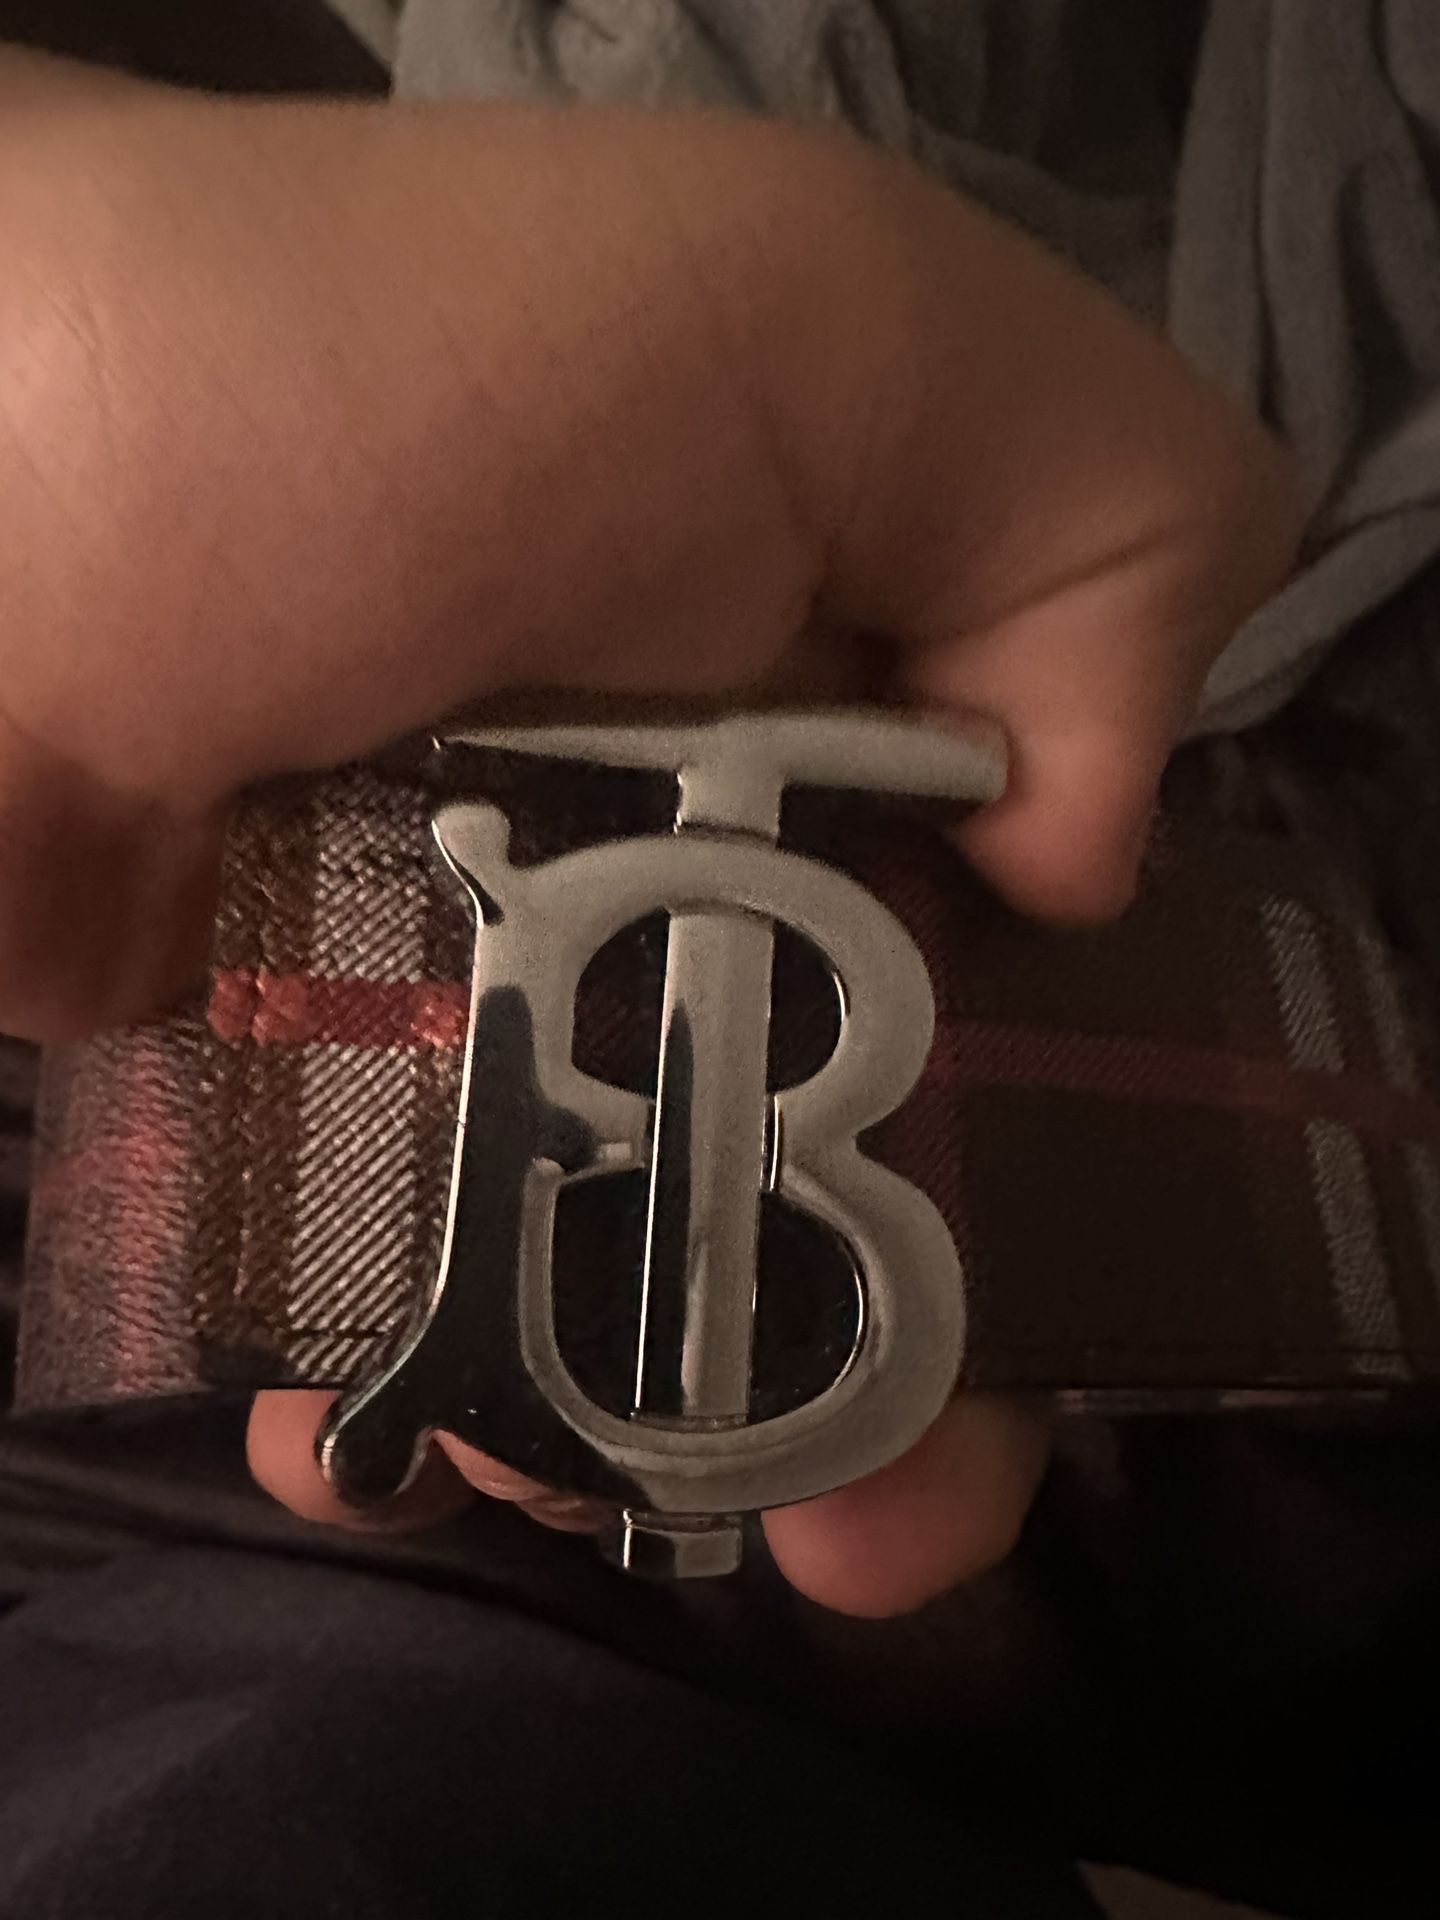 burberry belt reversable